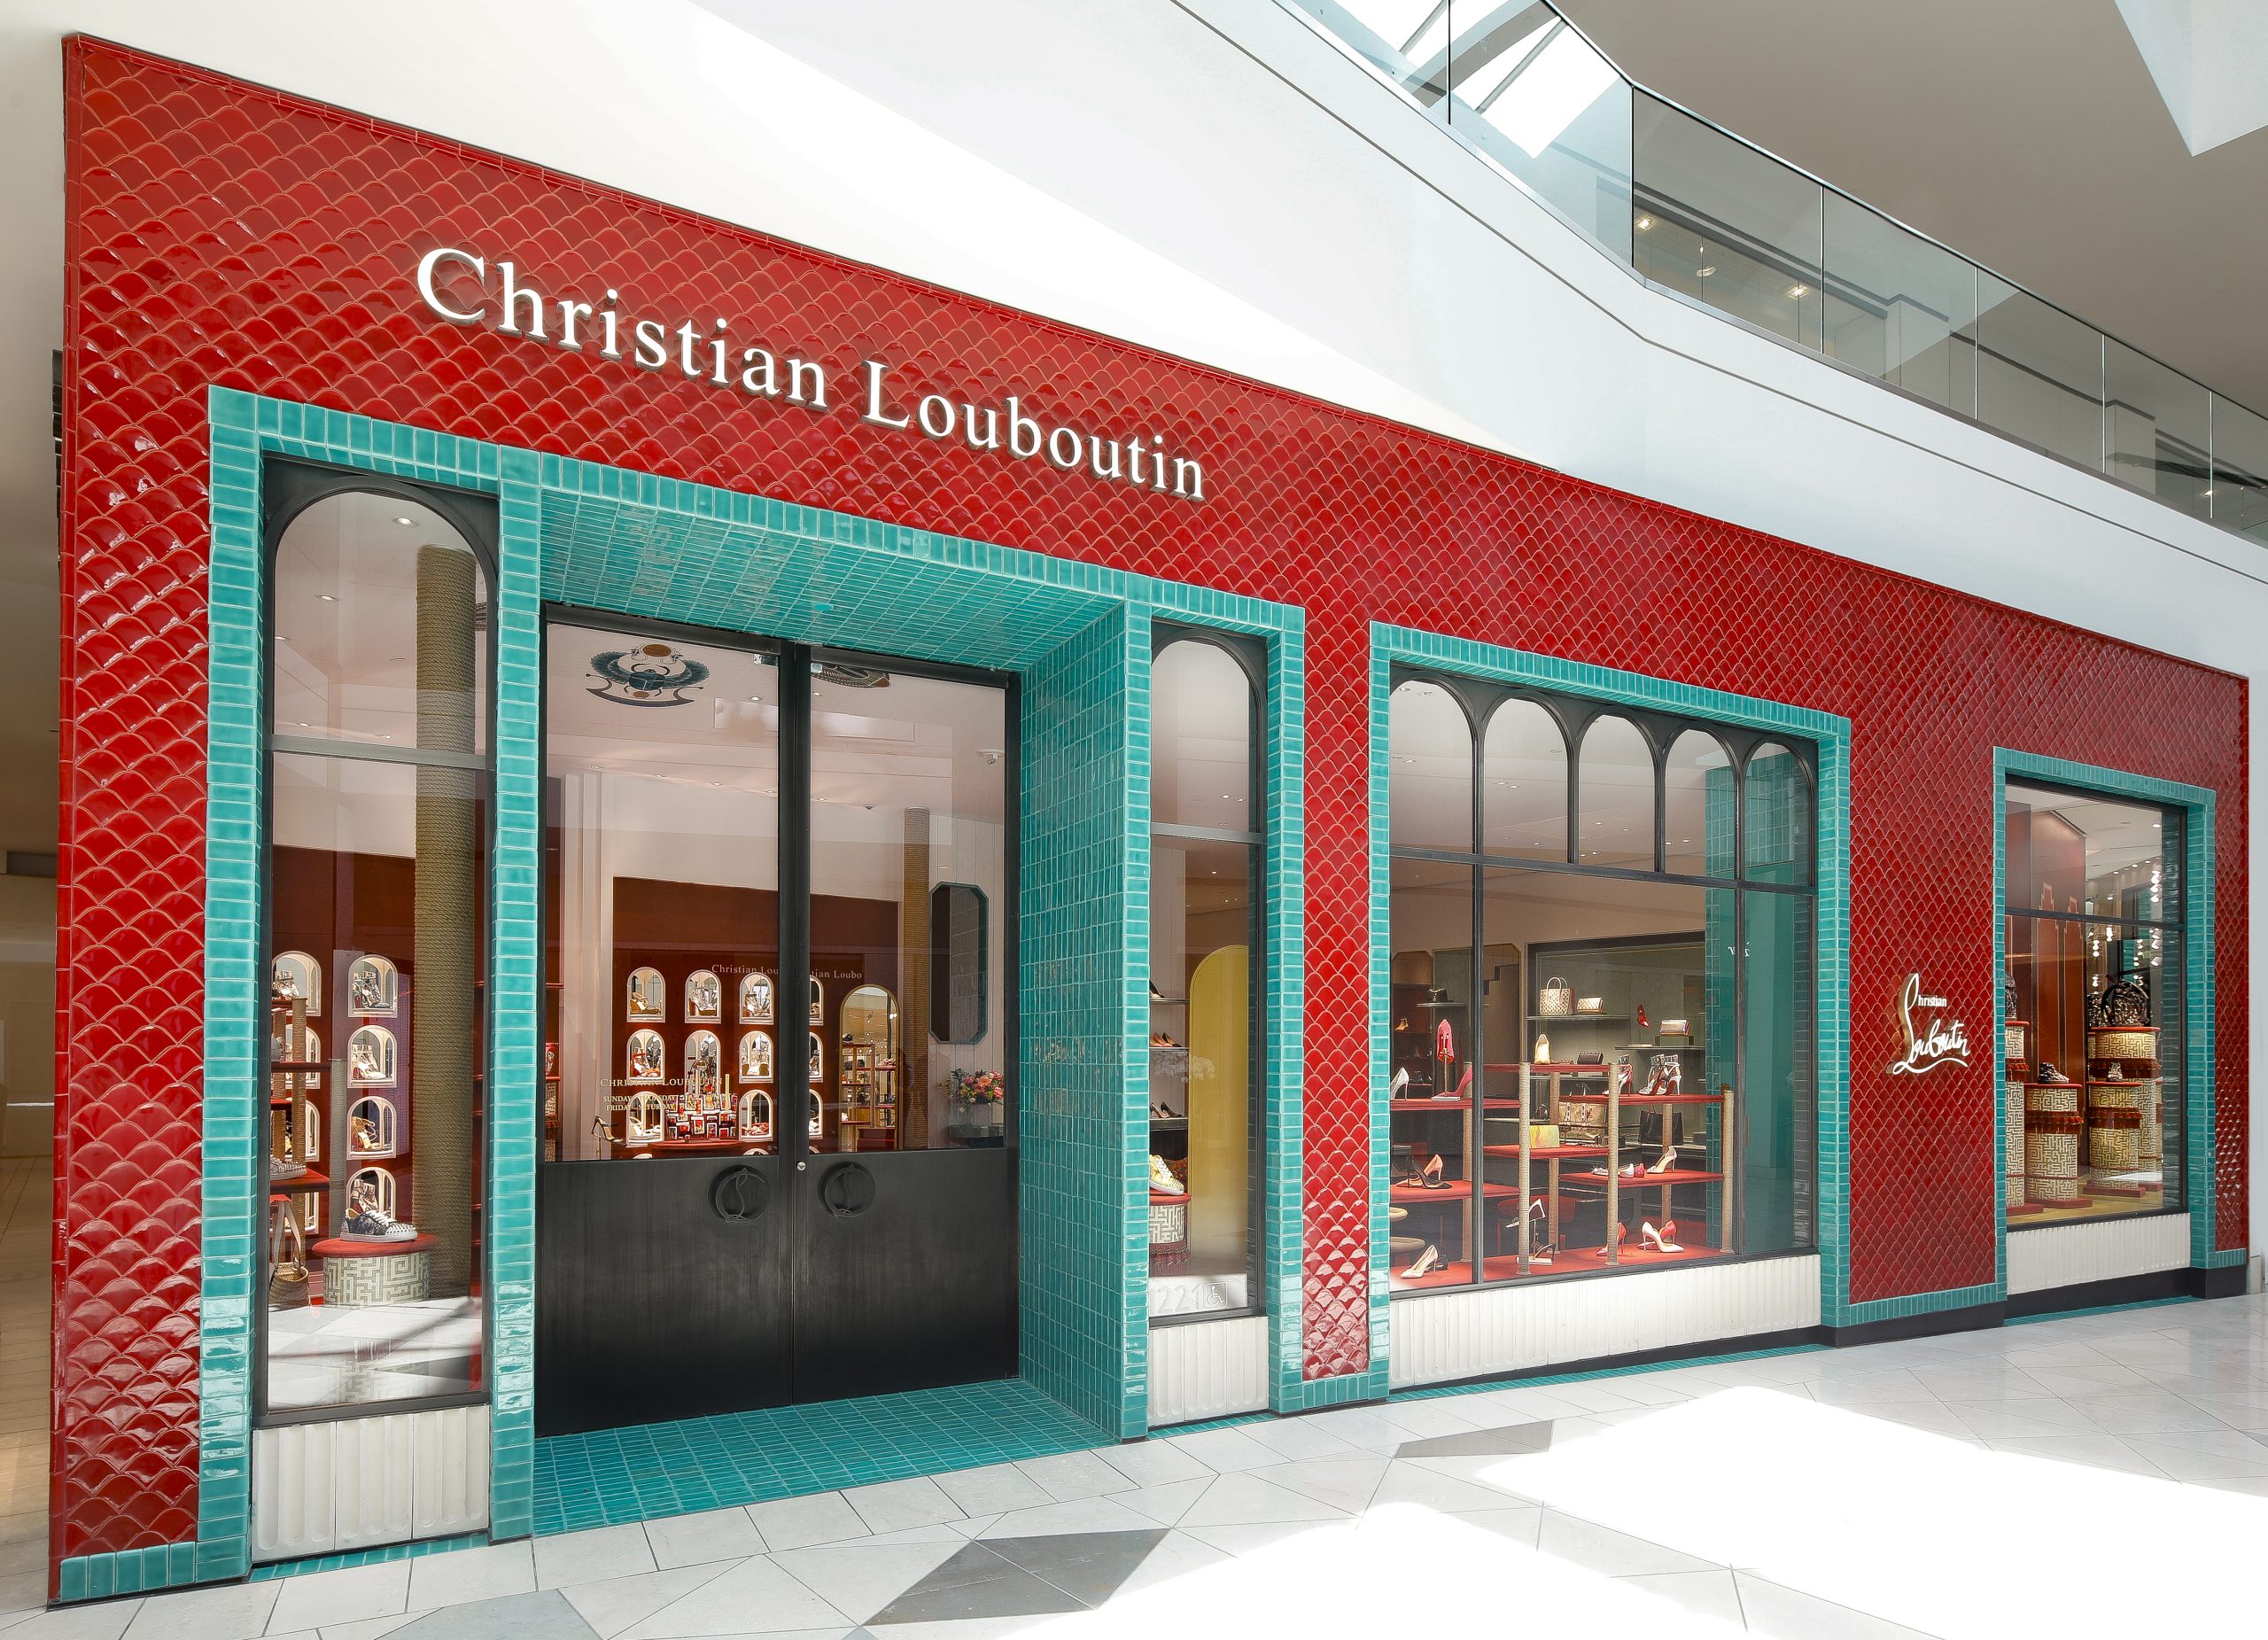 Christian Louboutin, Unique Store Fixtures